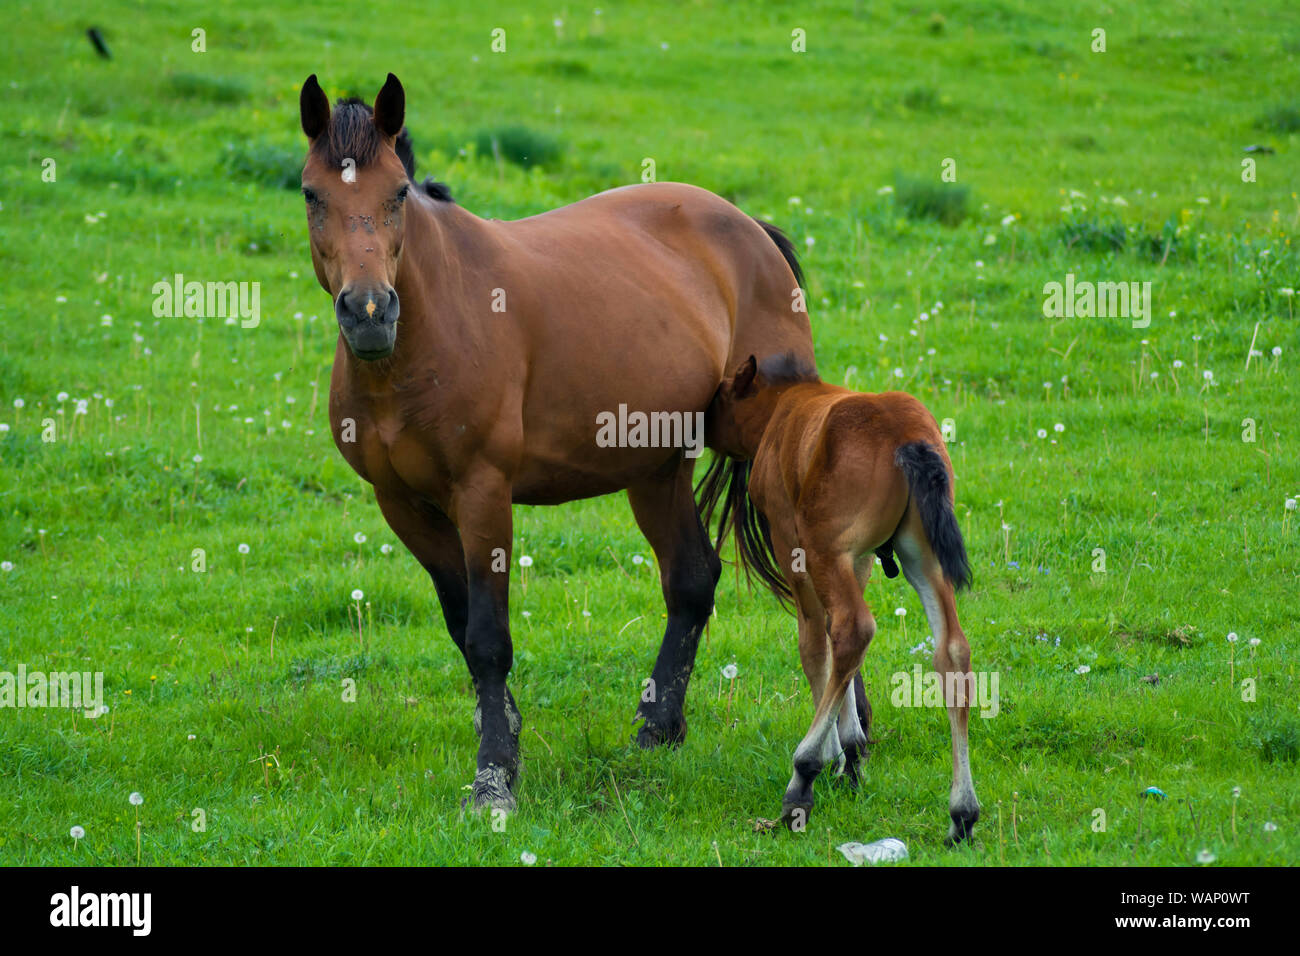 Petit cheval avec sa mère, l'amour mère fils. La cute baby poney de confiance se tourne vers sa maman. Chevaux d'amour pour toujours. Banque D'Images